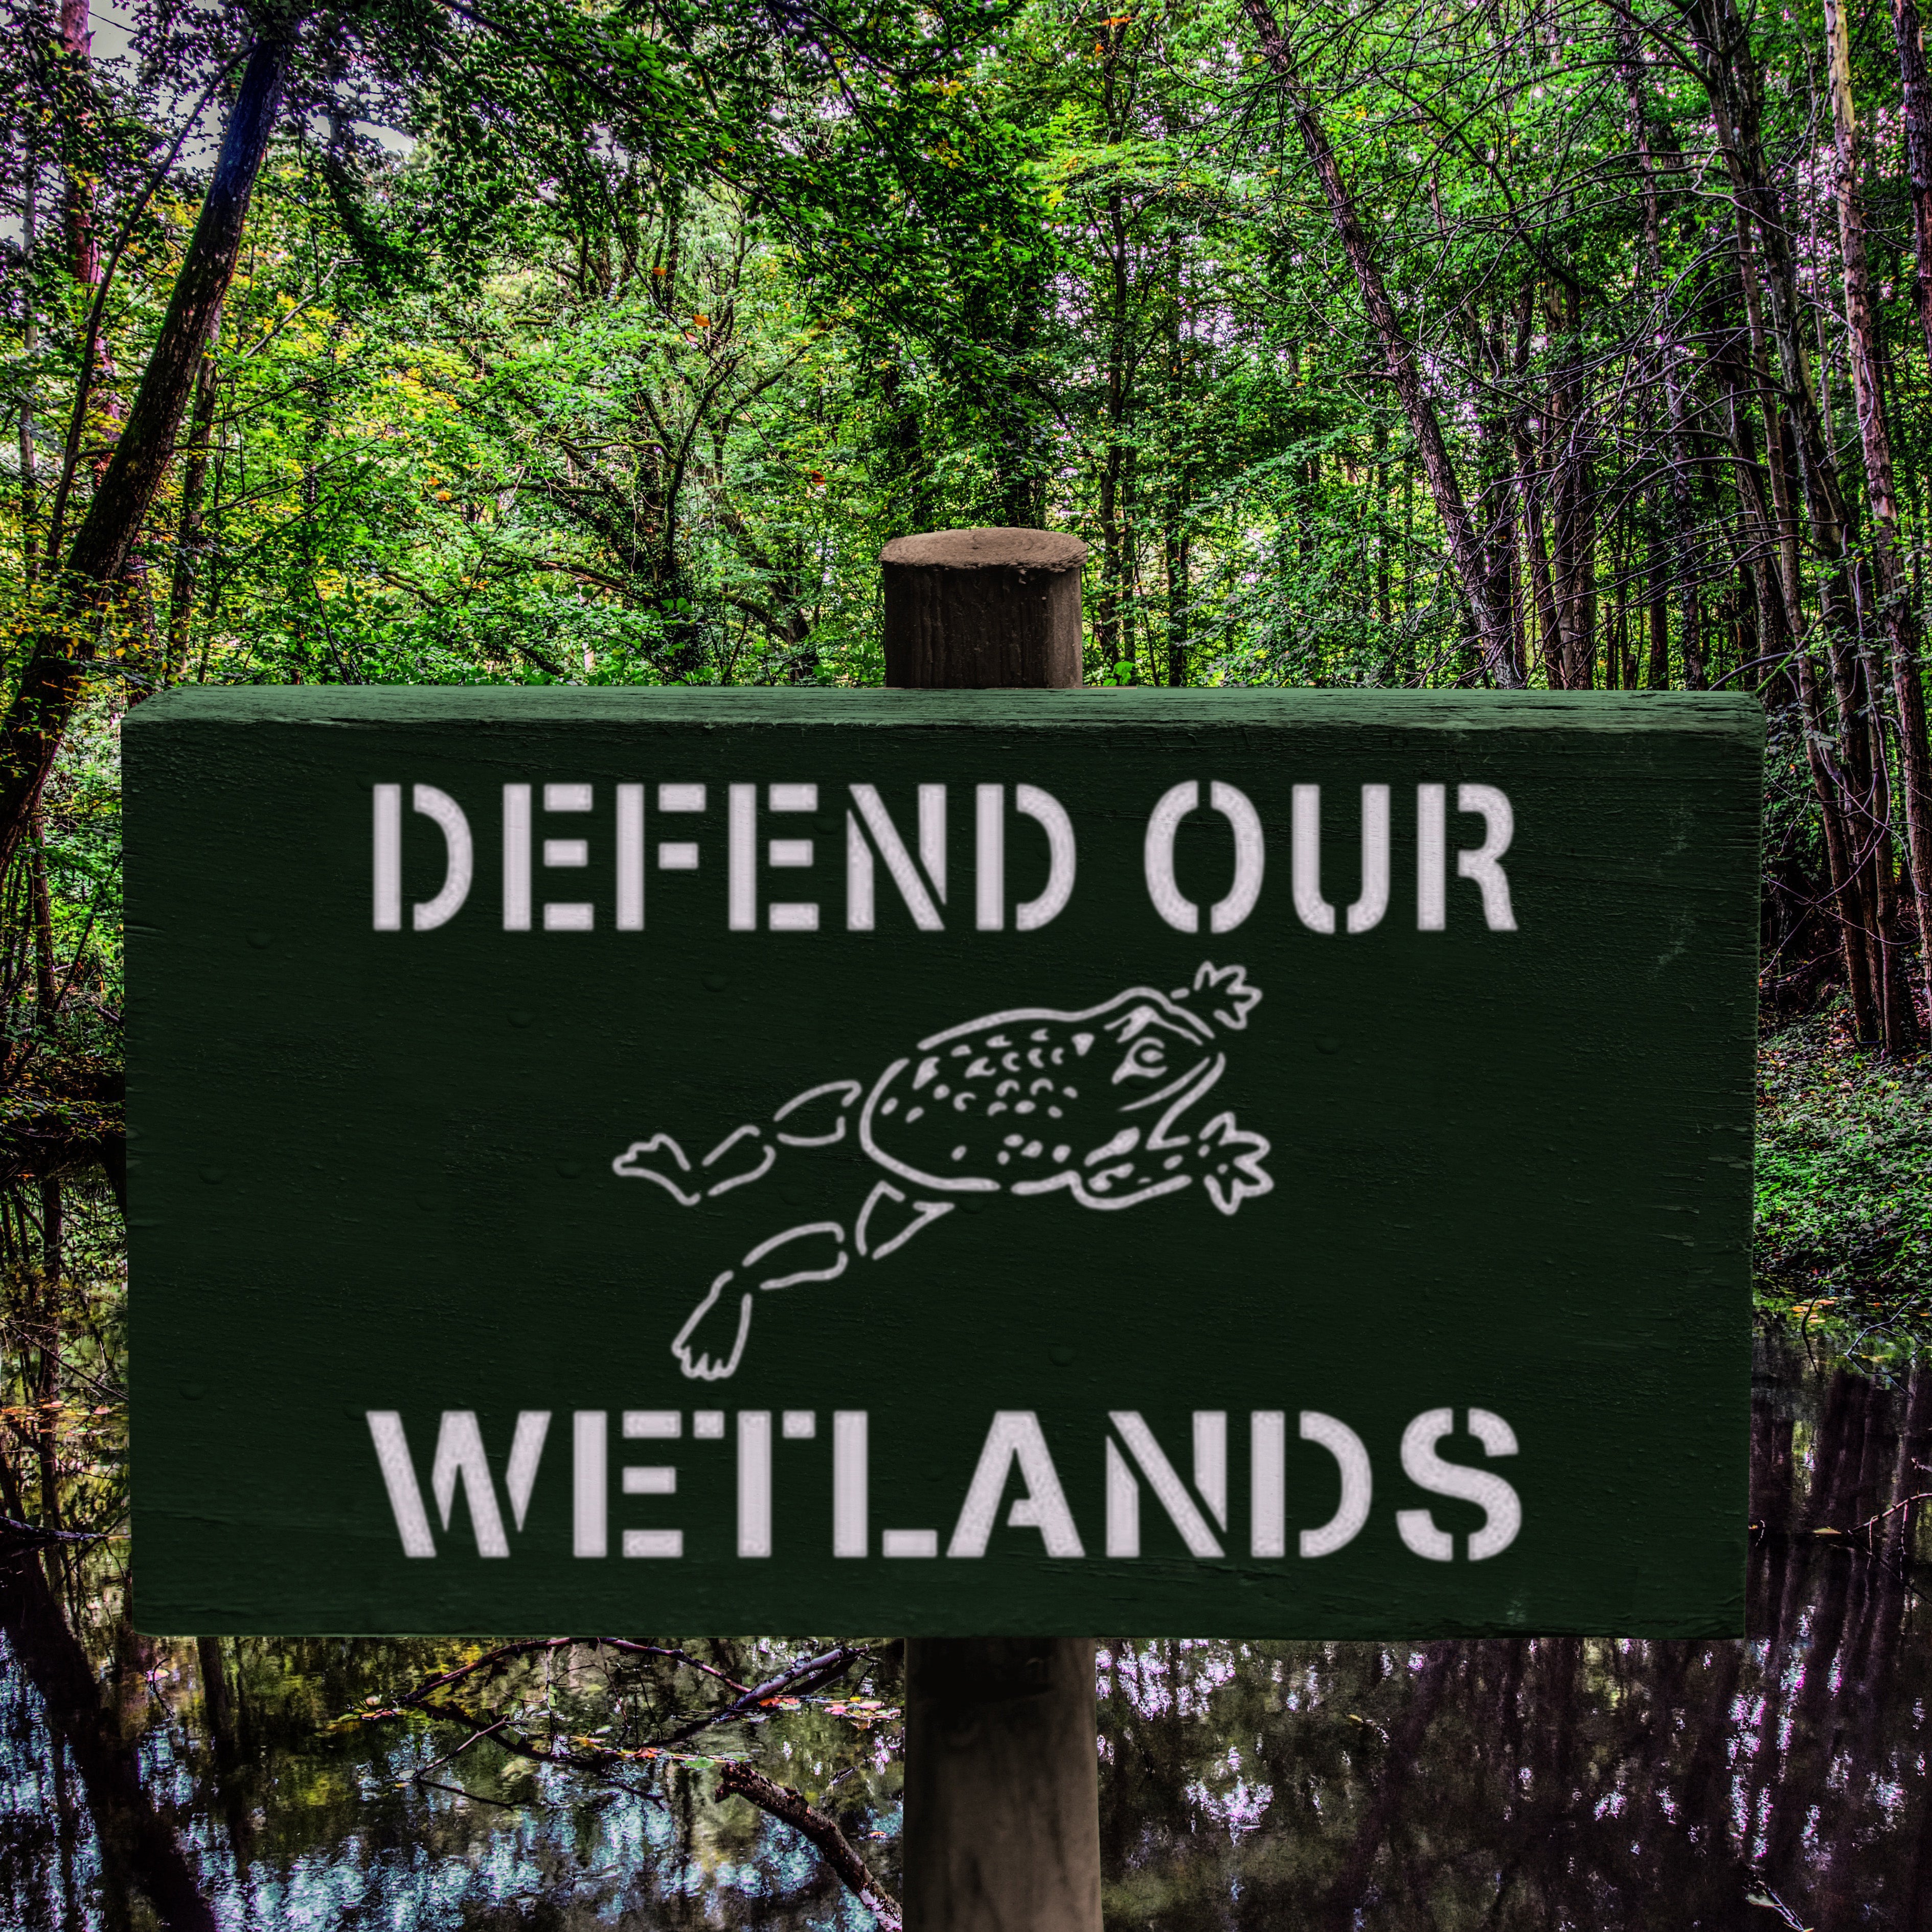 Defend our Wetlands Storm Drain Stencil